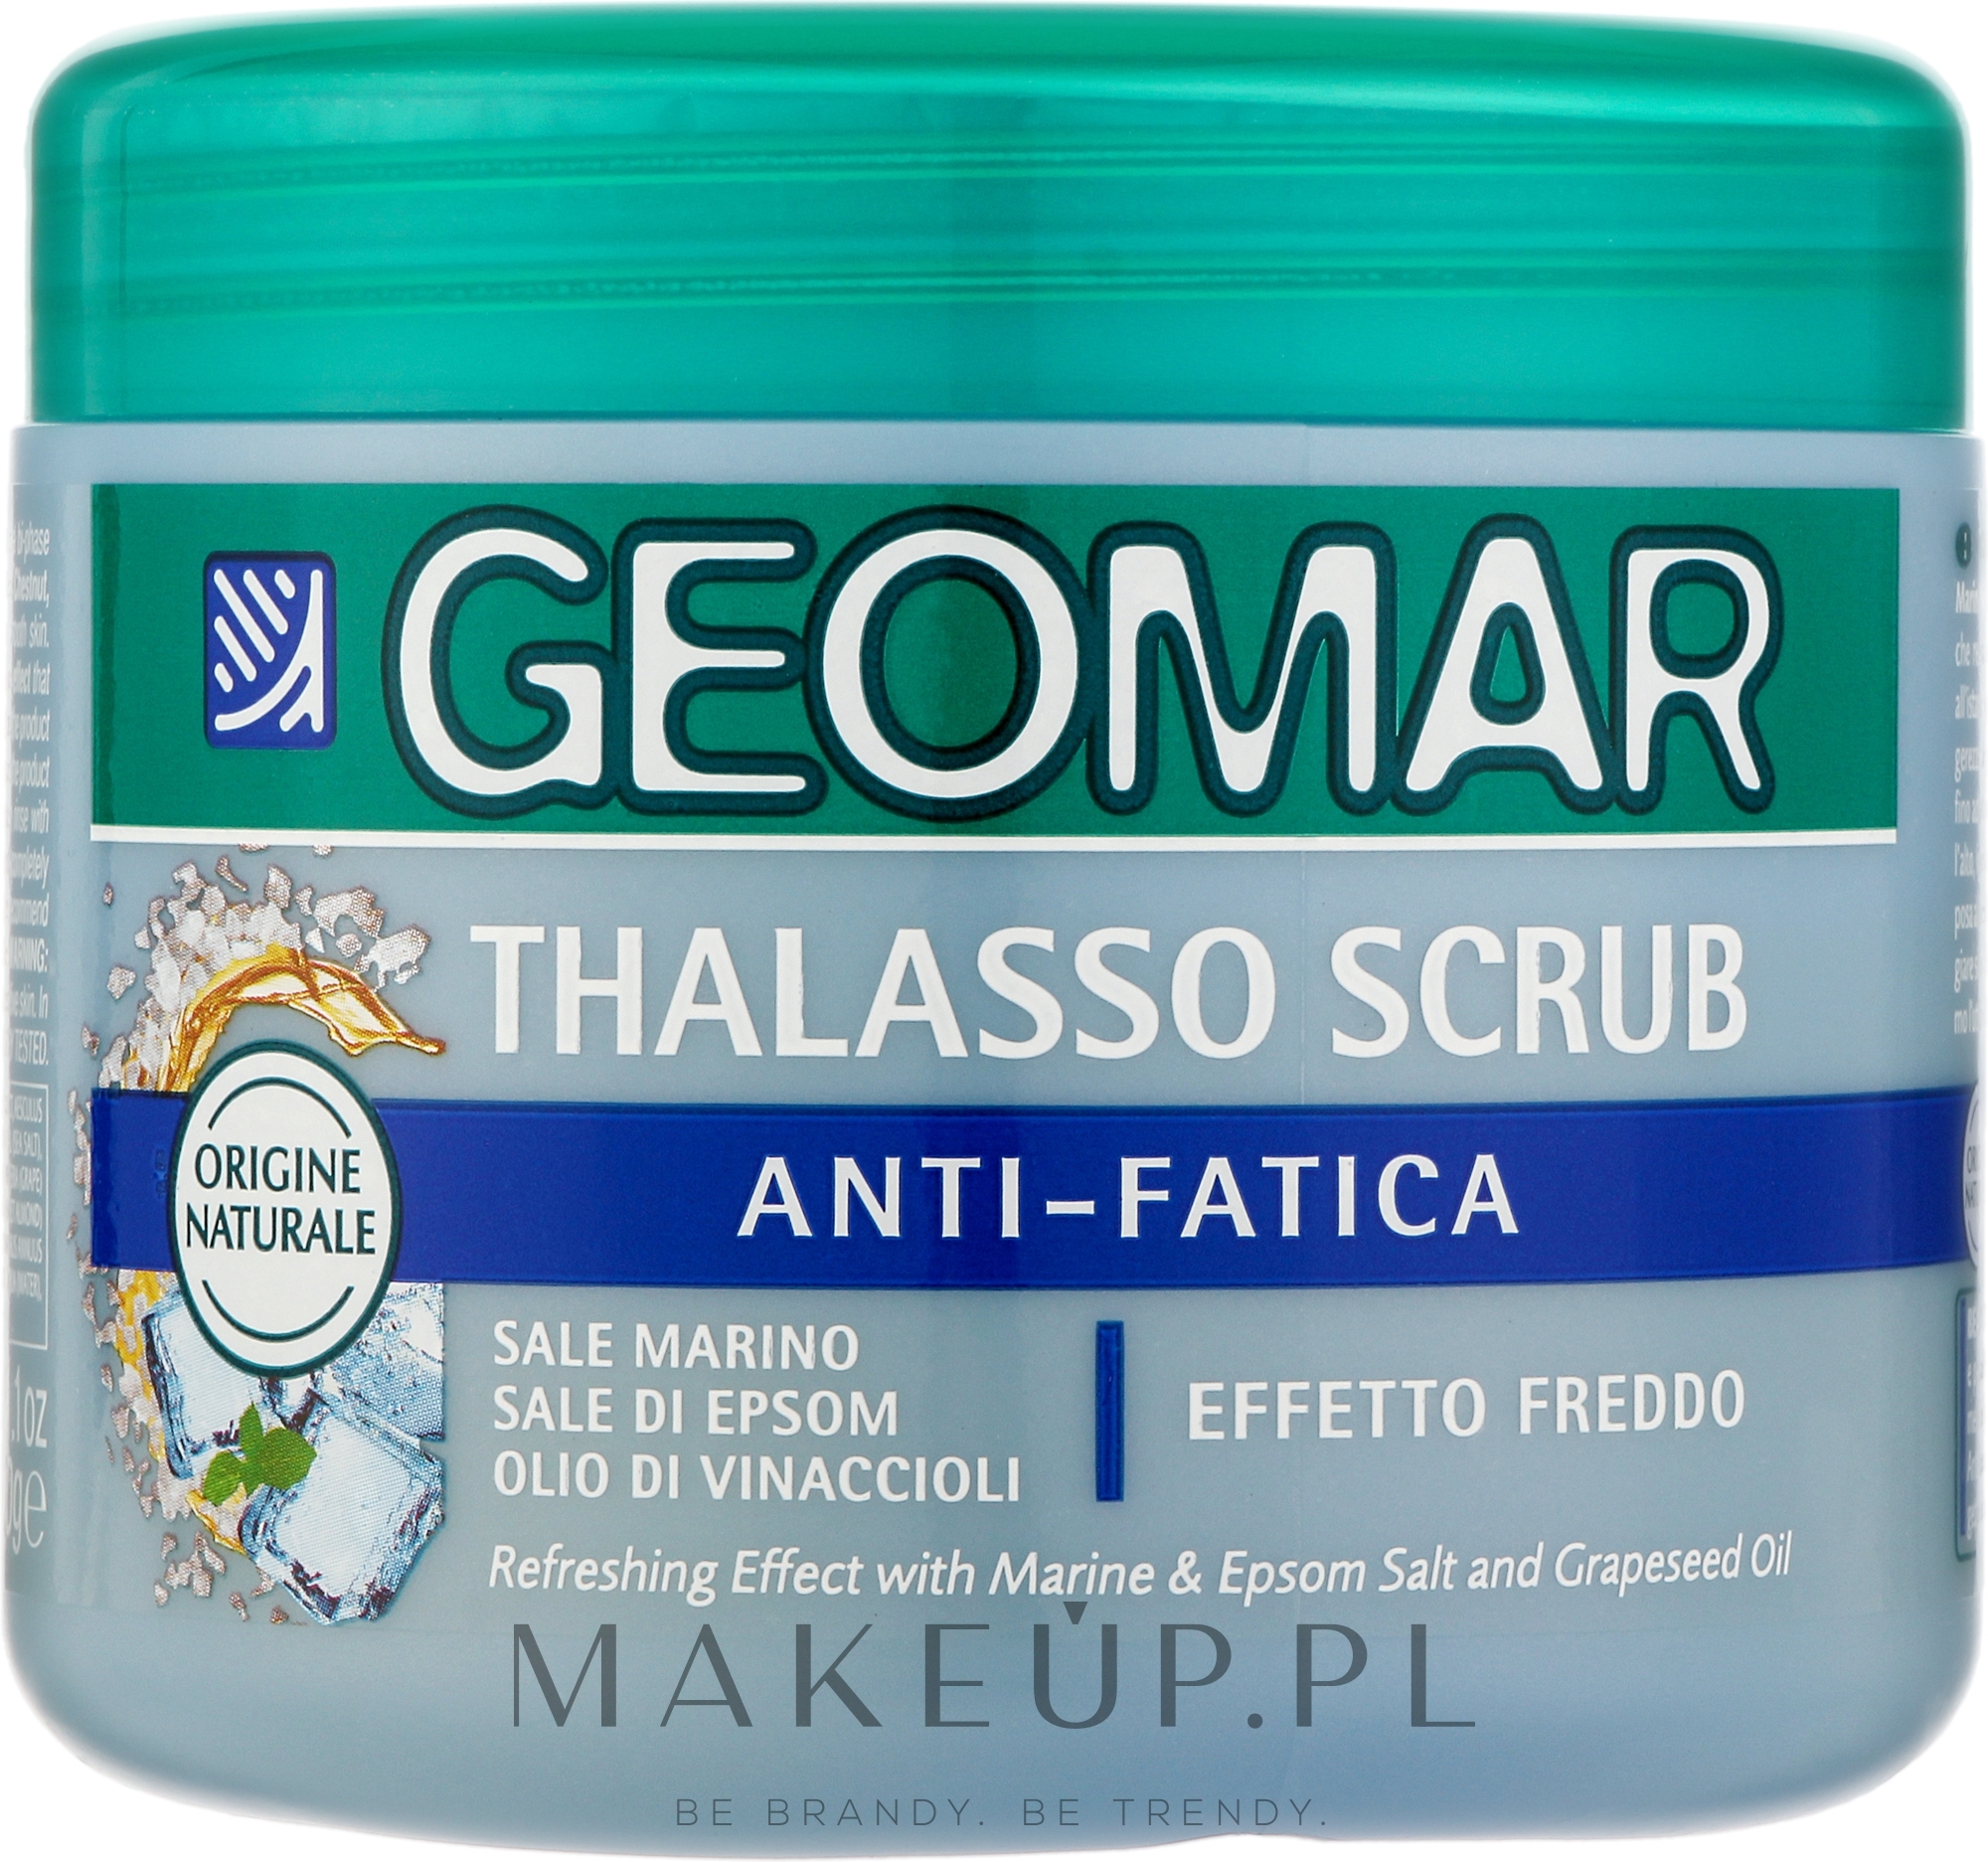 Thalassoterapeutyczny peeling przeciw zmęczeniu - Geomar Thalasso Scrub Anti-Fatigue — Zdjęcie 600 g